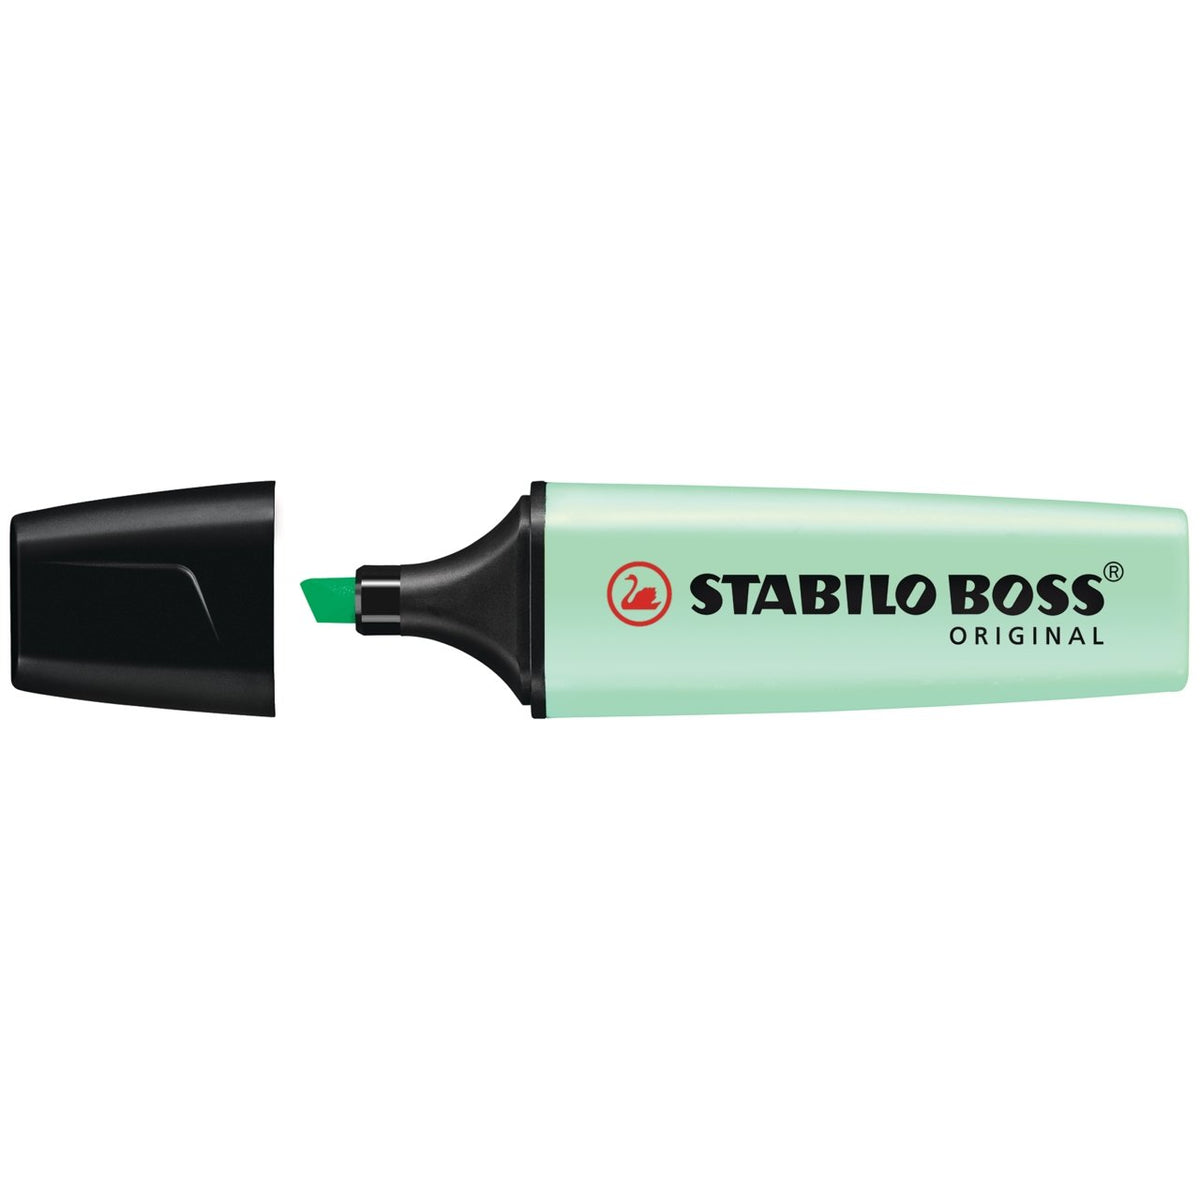 Stabilo BOSS Original Highlighter - Hint of Mint - merriartist.com